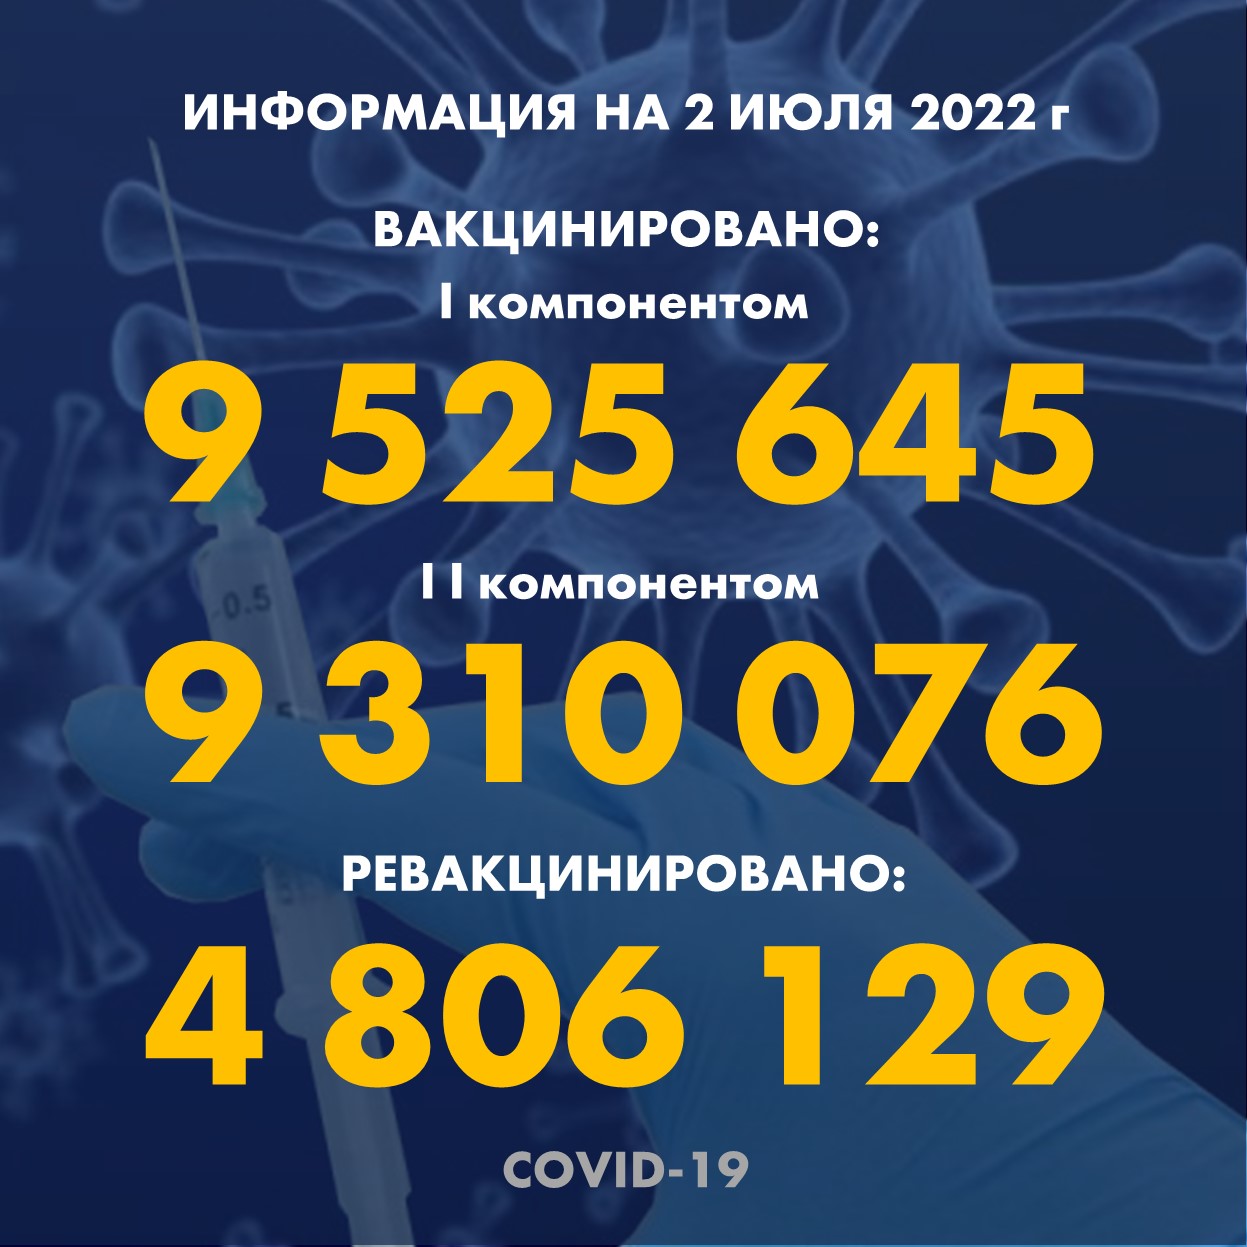 I компонентом 9 525 645 человек провакцинировано в Казахстане на 2.07.2022 г, II компонентом 9 310 076 человек. Ревакцинировано – 4 806 129